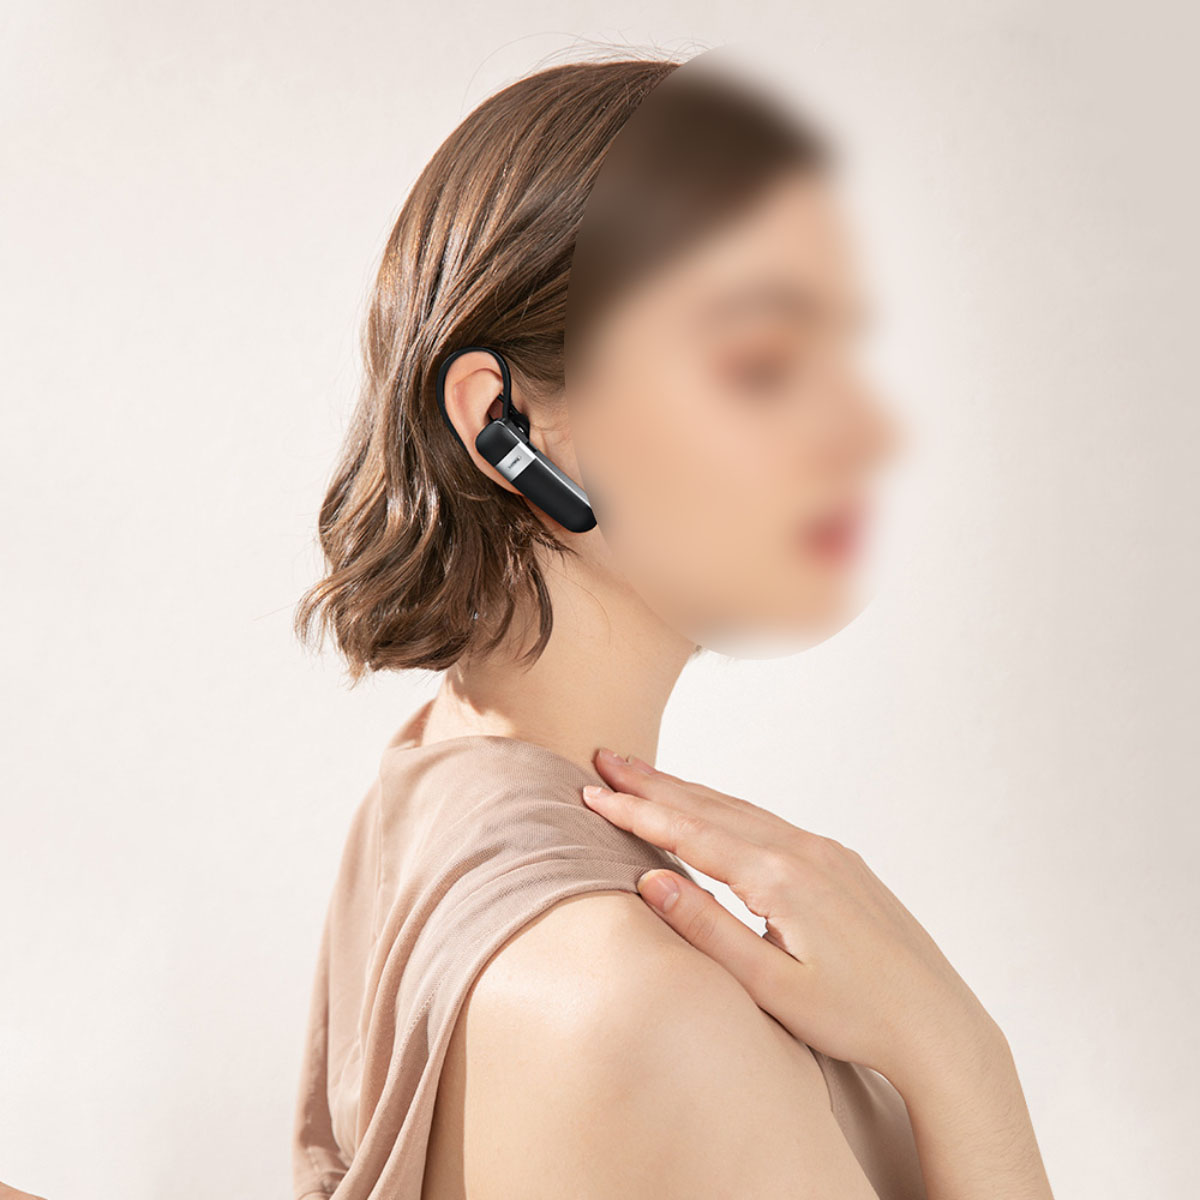 BYTELIKE True Ear Business Bluetooth Headset Hanging Bluetooth-Kopfhörer Wireless Bluetooth Talking Stereo Headset, schwarz In-ear